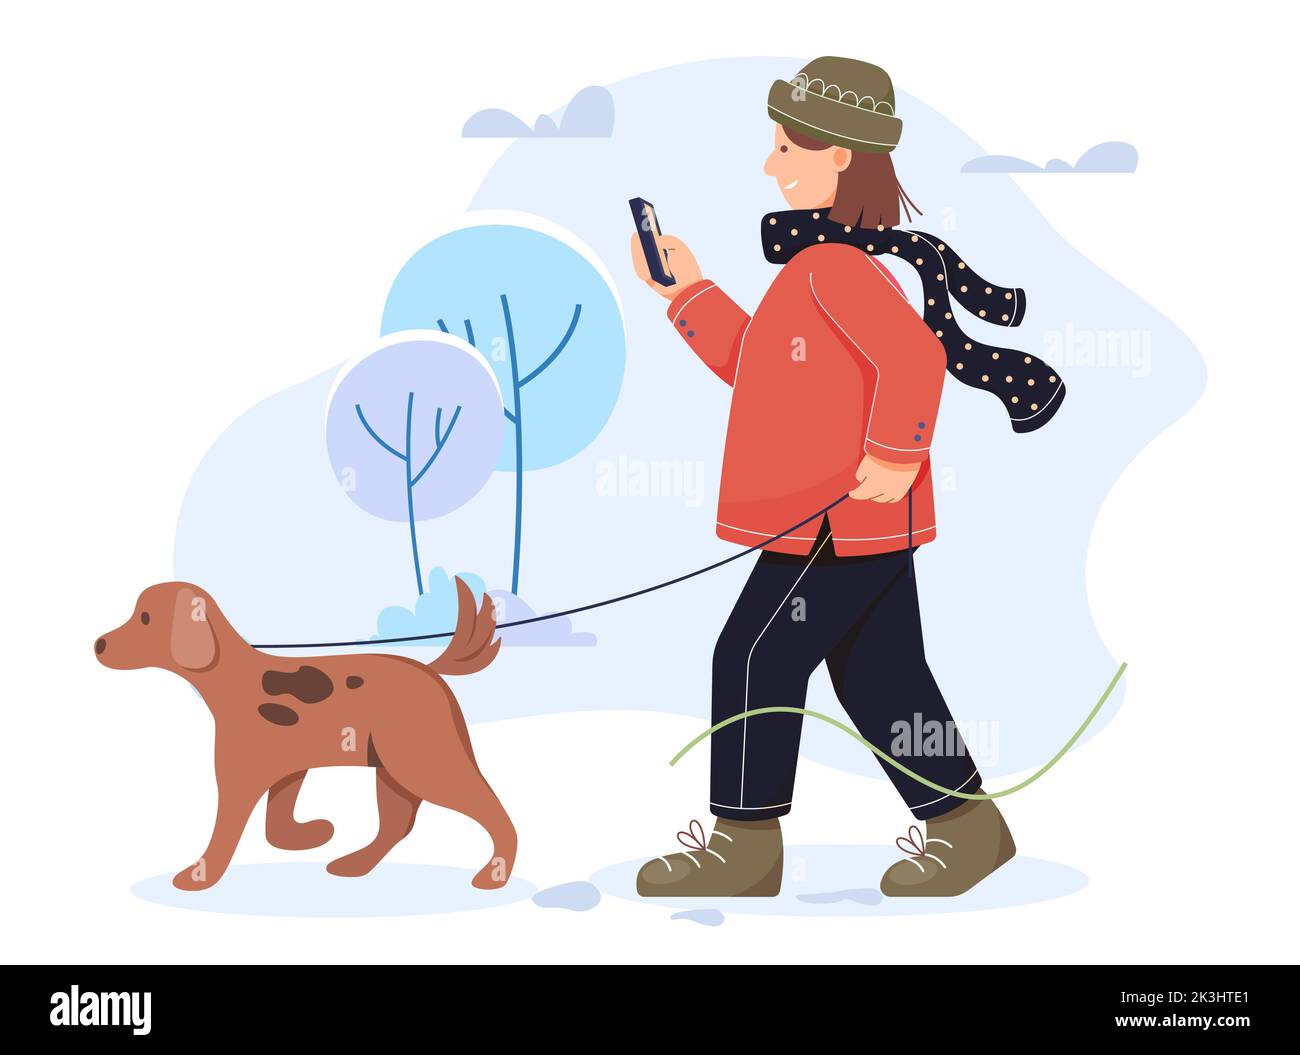 Frauen Wanderhund im kalten Schneewinter - Stockillustration als EPS 10 Datei Stock Vektor